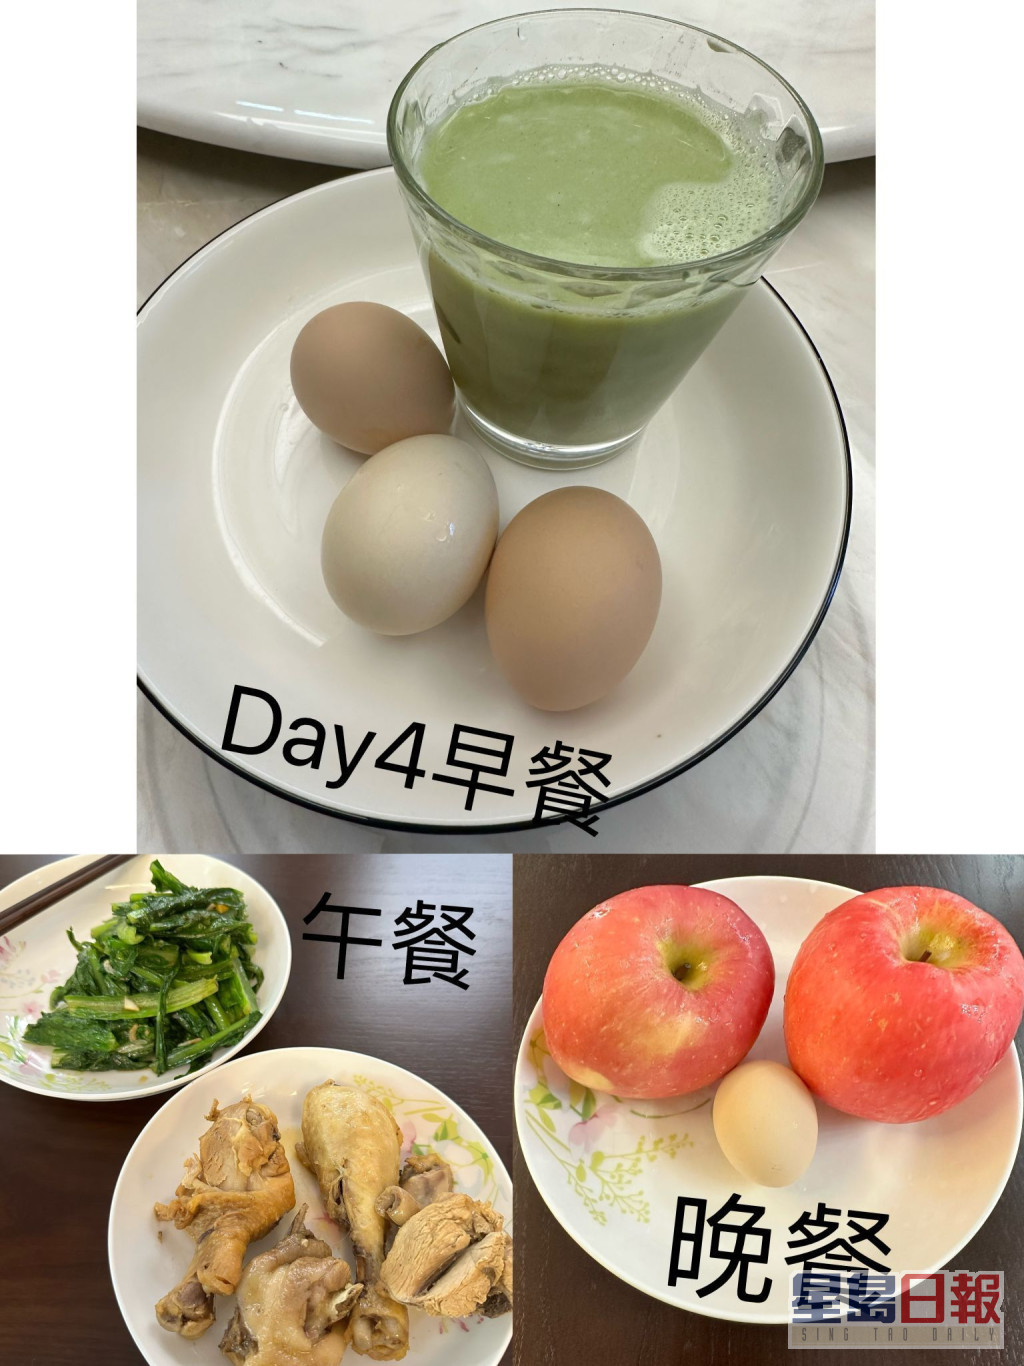 第四日早餐：加入菜汁无糖豆浆及3烚蛋；午餐：烚鸡腿和炒油墨菜；晚餐2苹果和1烚蛋。